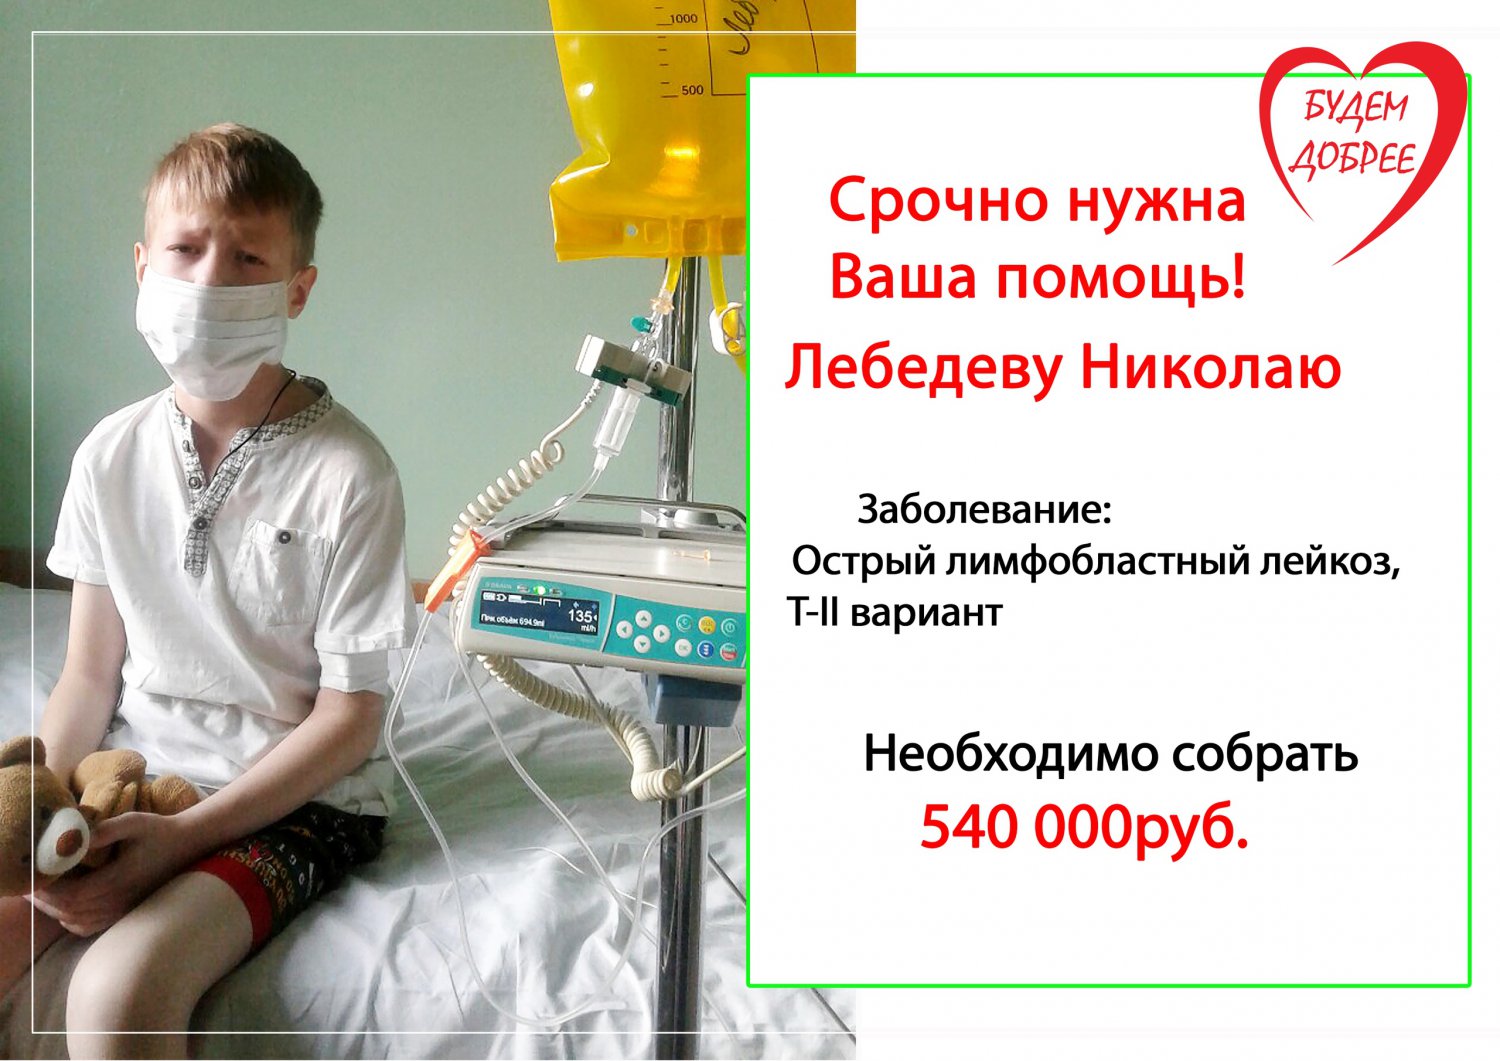 Девятилетнему Николаю Лебедеву требуется 540 тысяч на лечение лейкоза